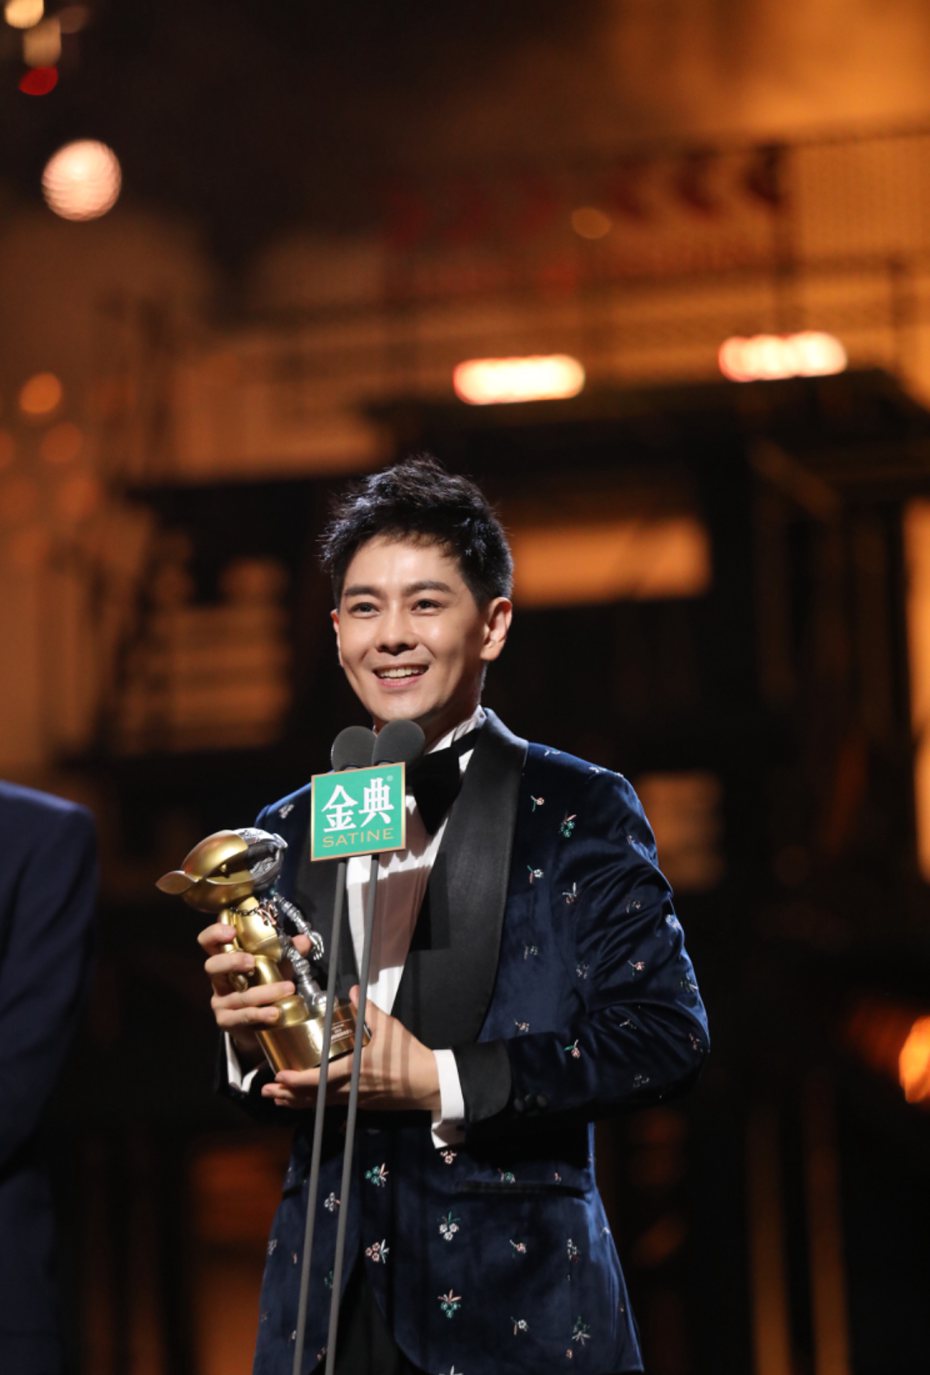 林志穎獲得最高榮譽MVP。圖/曜昇星提供